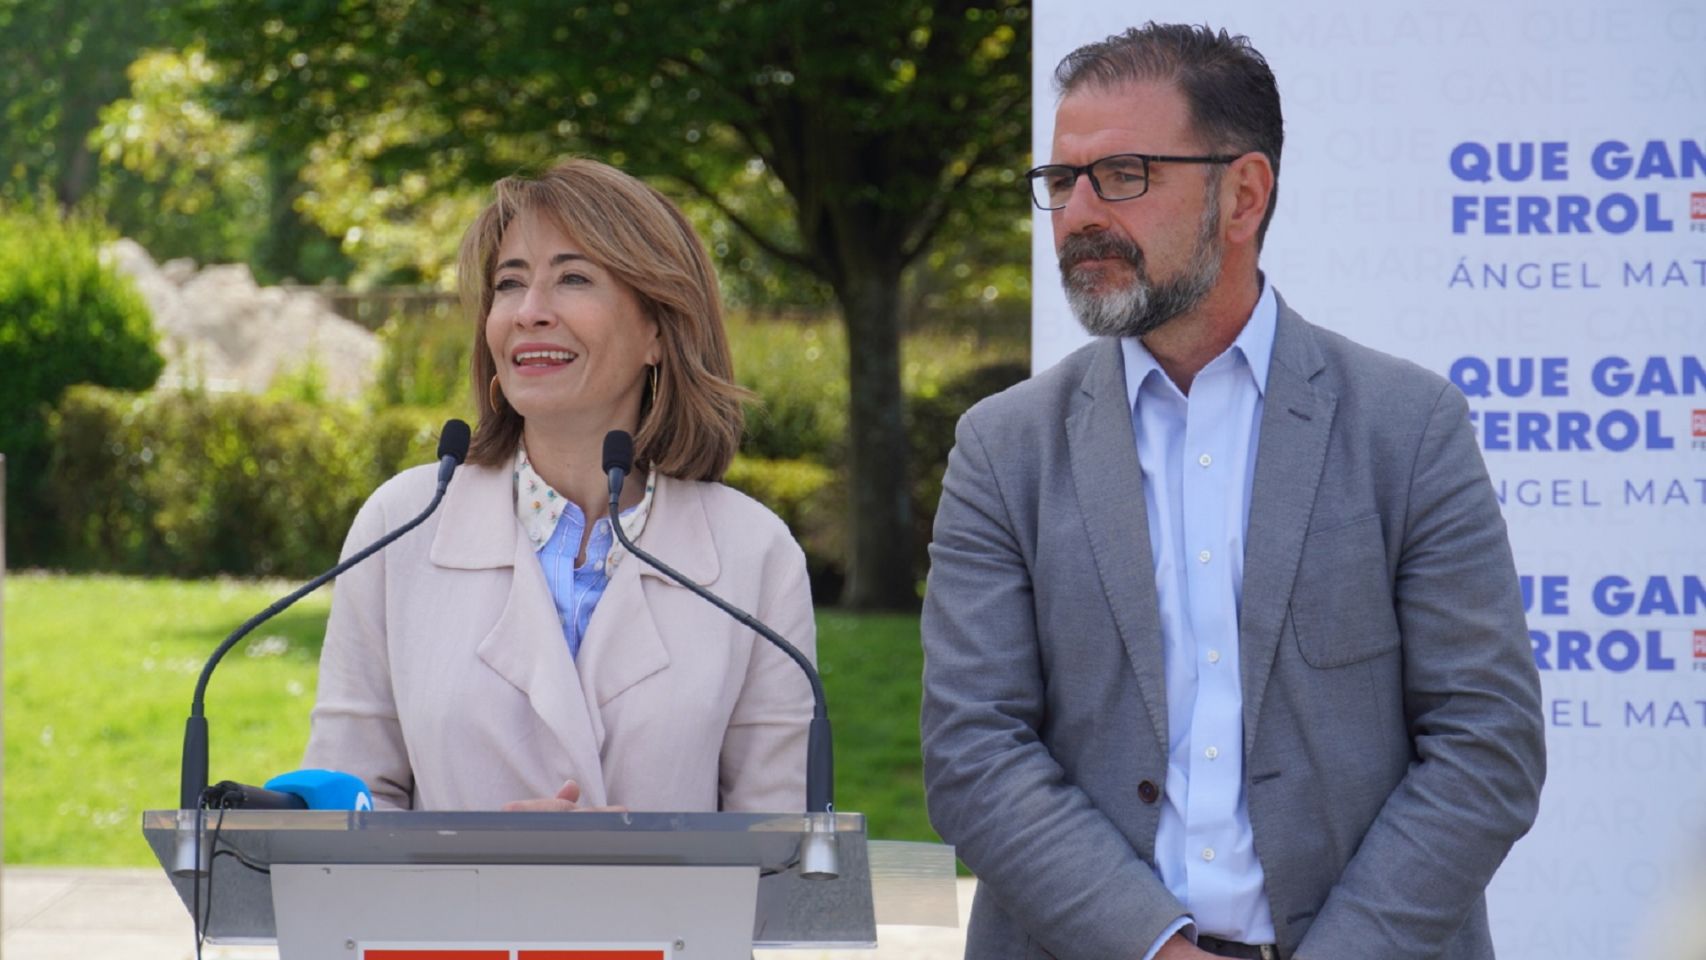 La ministra de Transportes, Raquel Sánchez, y el alcalde de Ferrol, Ángel Mato.